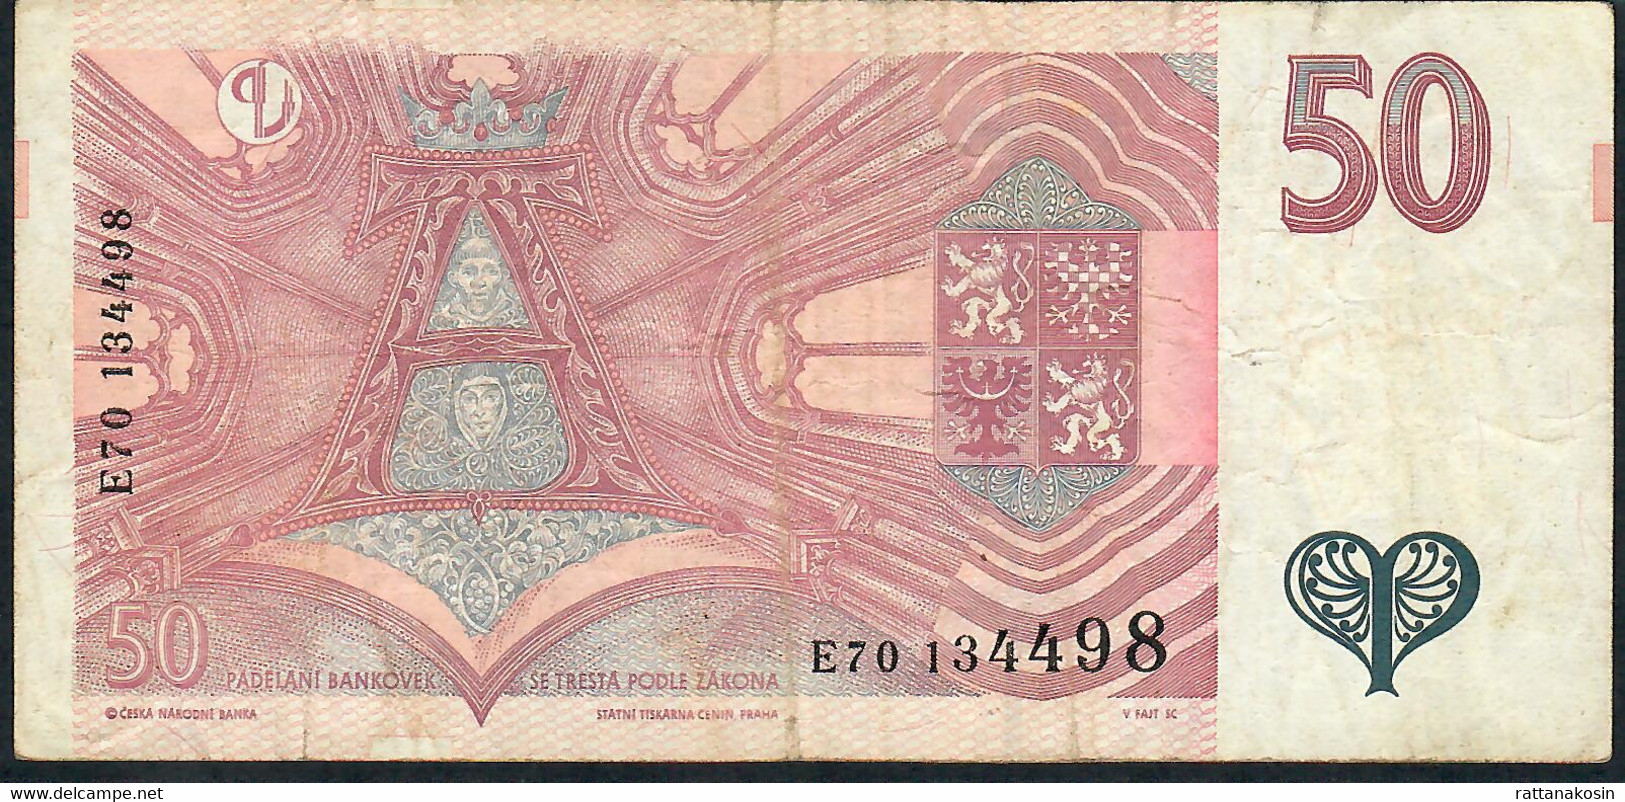 CZECH REPUBLIC  P17  50  KORUN  1997 #E70    VF - Tchéquie